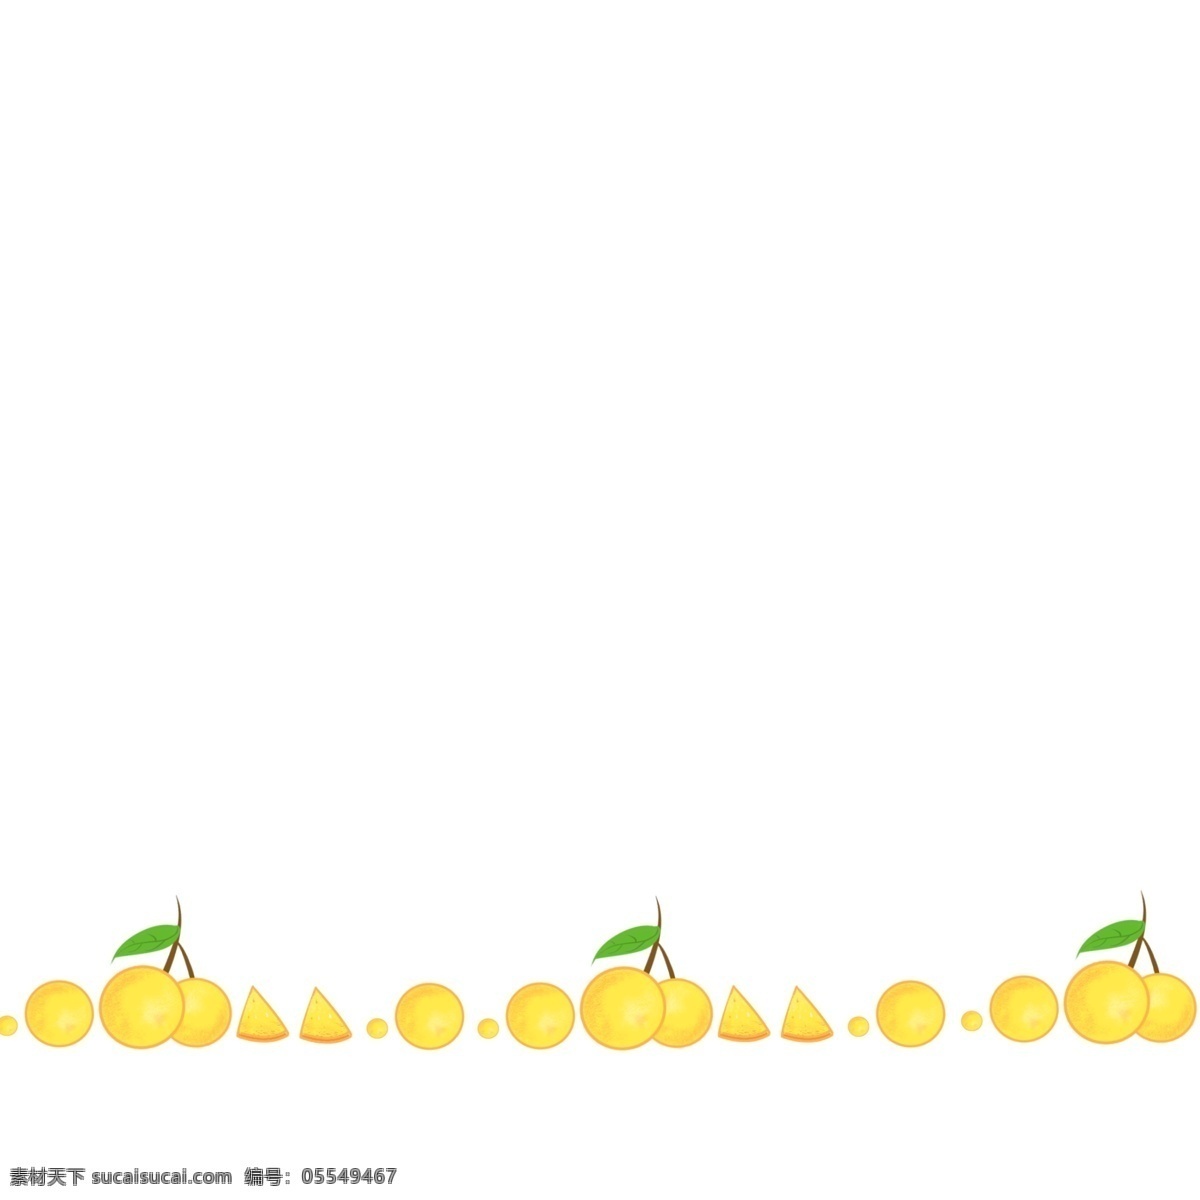 水果 橘子 分割线 插画 黄色的分割线 卡通插画 分割线插画 简易分割线 装饰插画 水果分割线